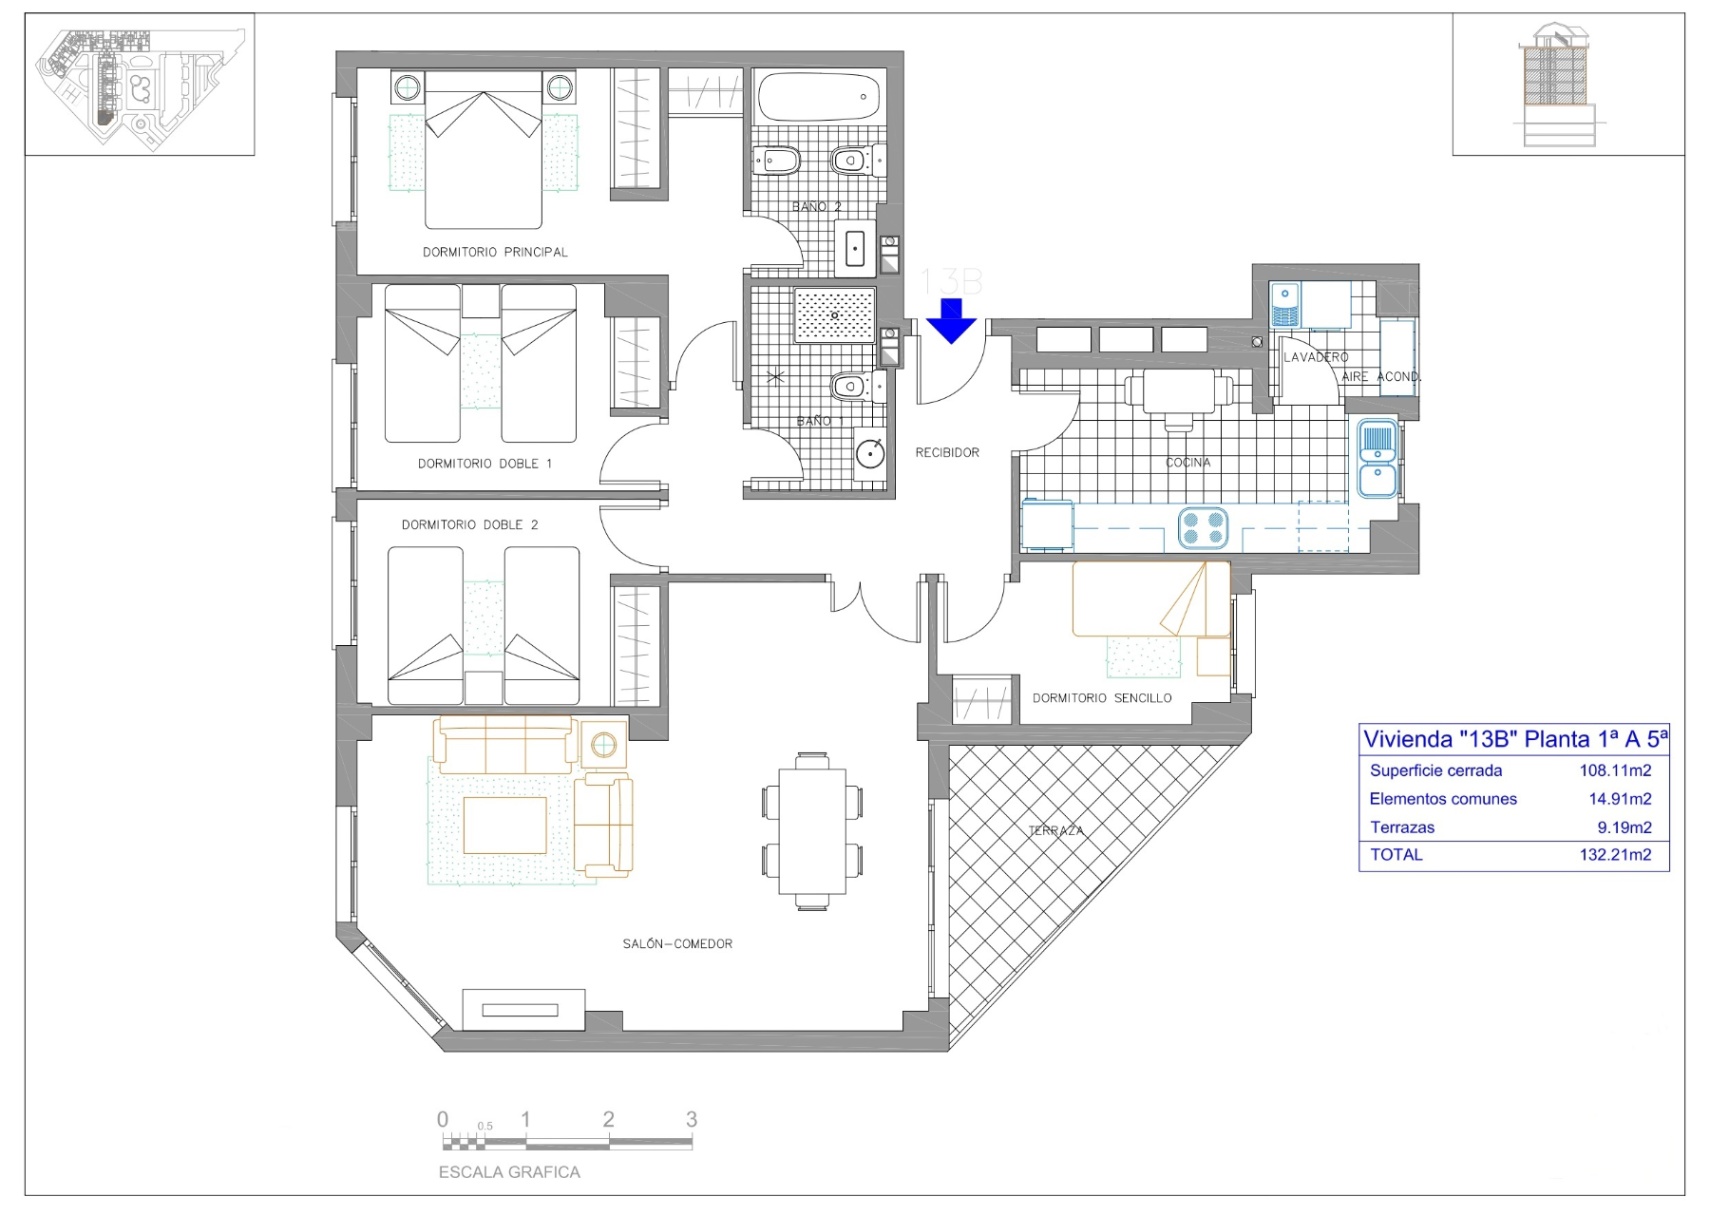 Appartement de 4 chambres à vendre - Residencial Dénia Plaza